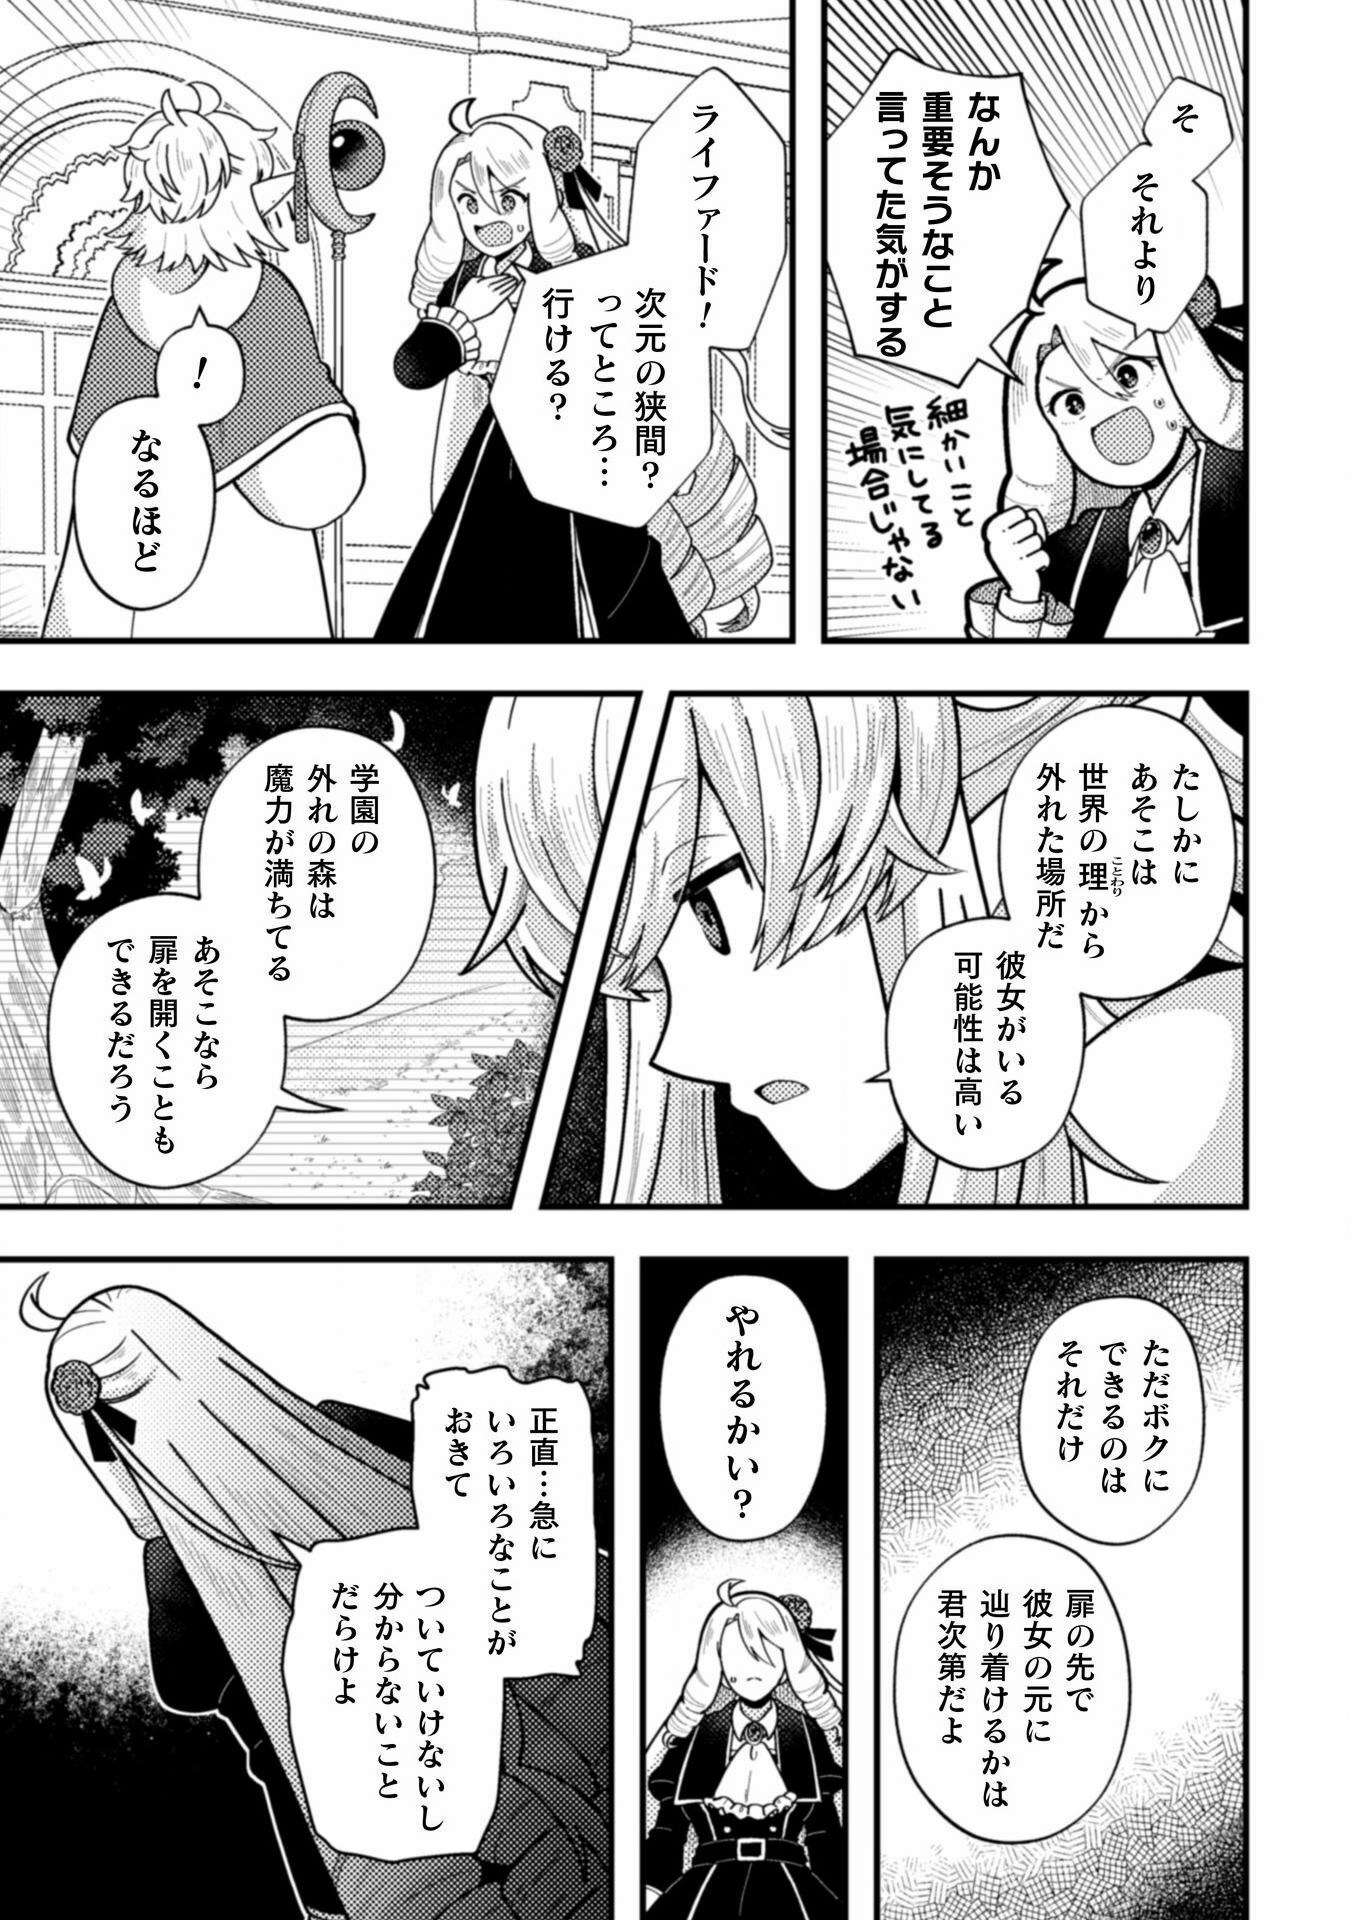 Otome Game no Akuyaku Reijou ni Tensei shitakedo Follower ga Fukyoushiteta Chisiki shikanai - Chapter 22 - Page 9